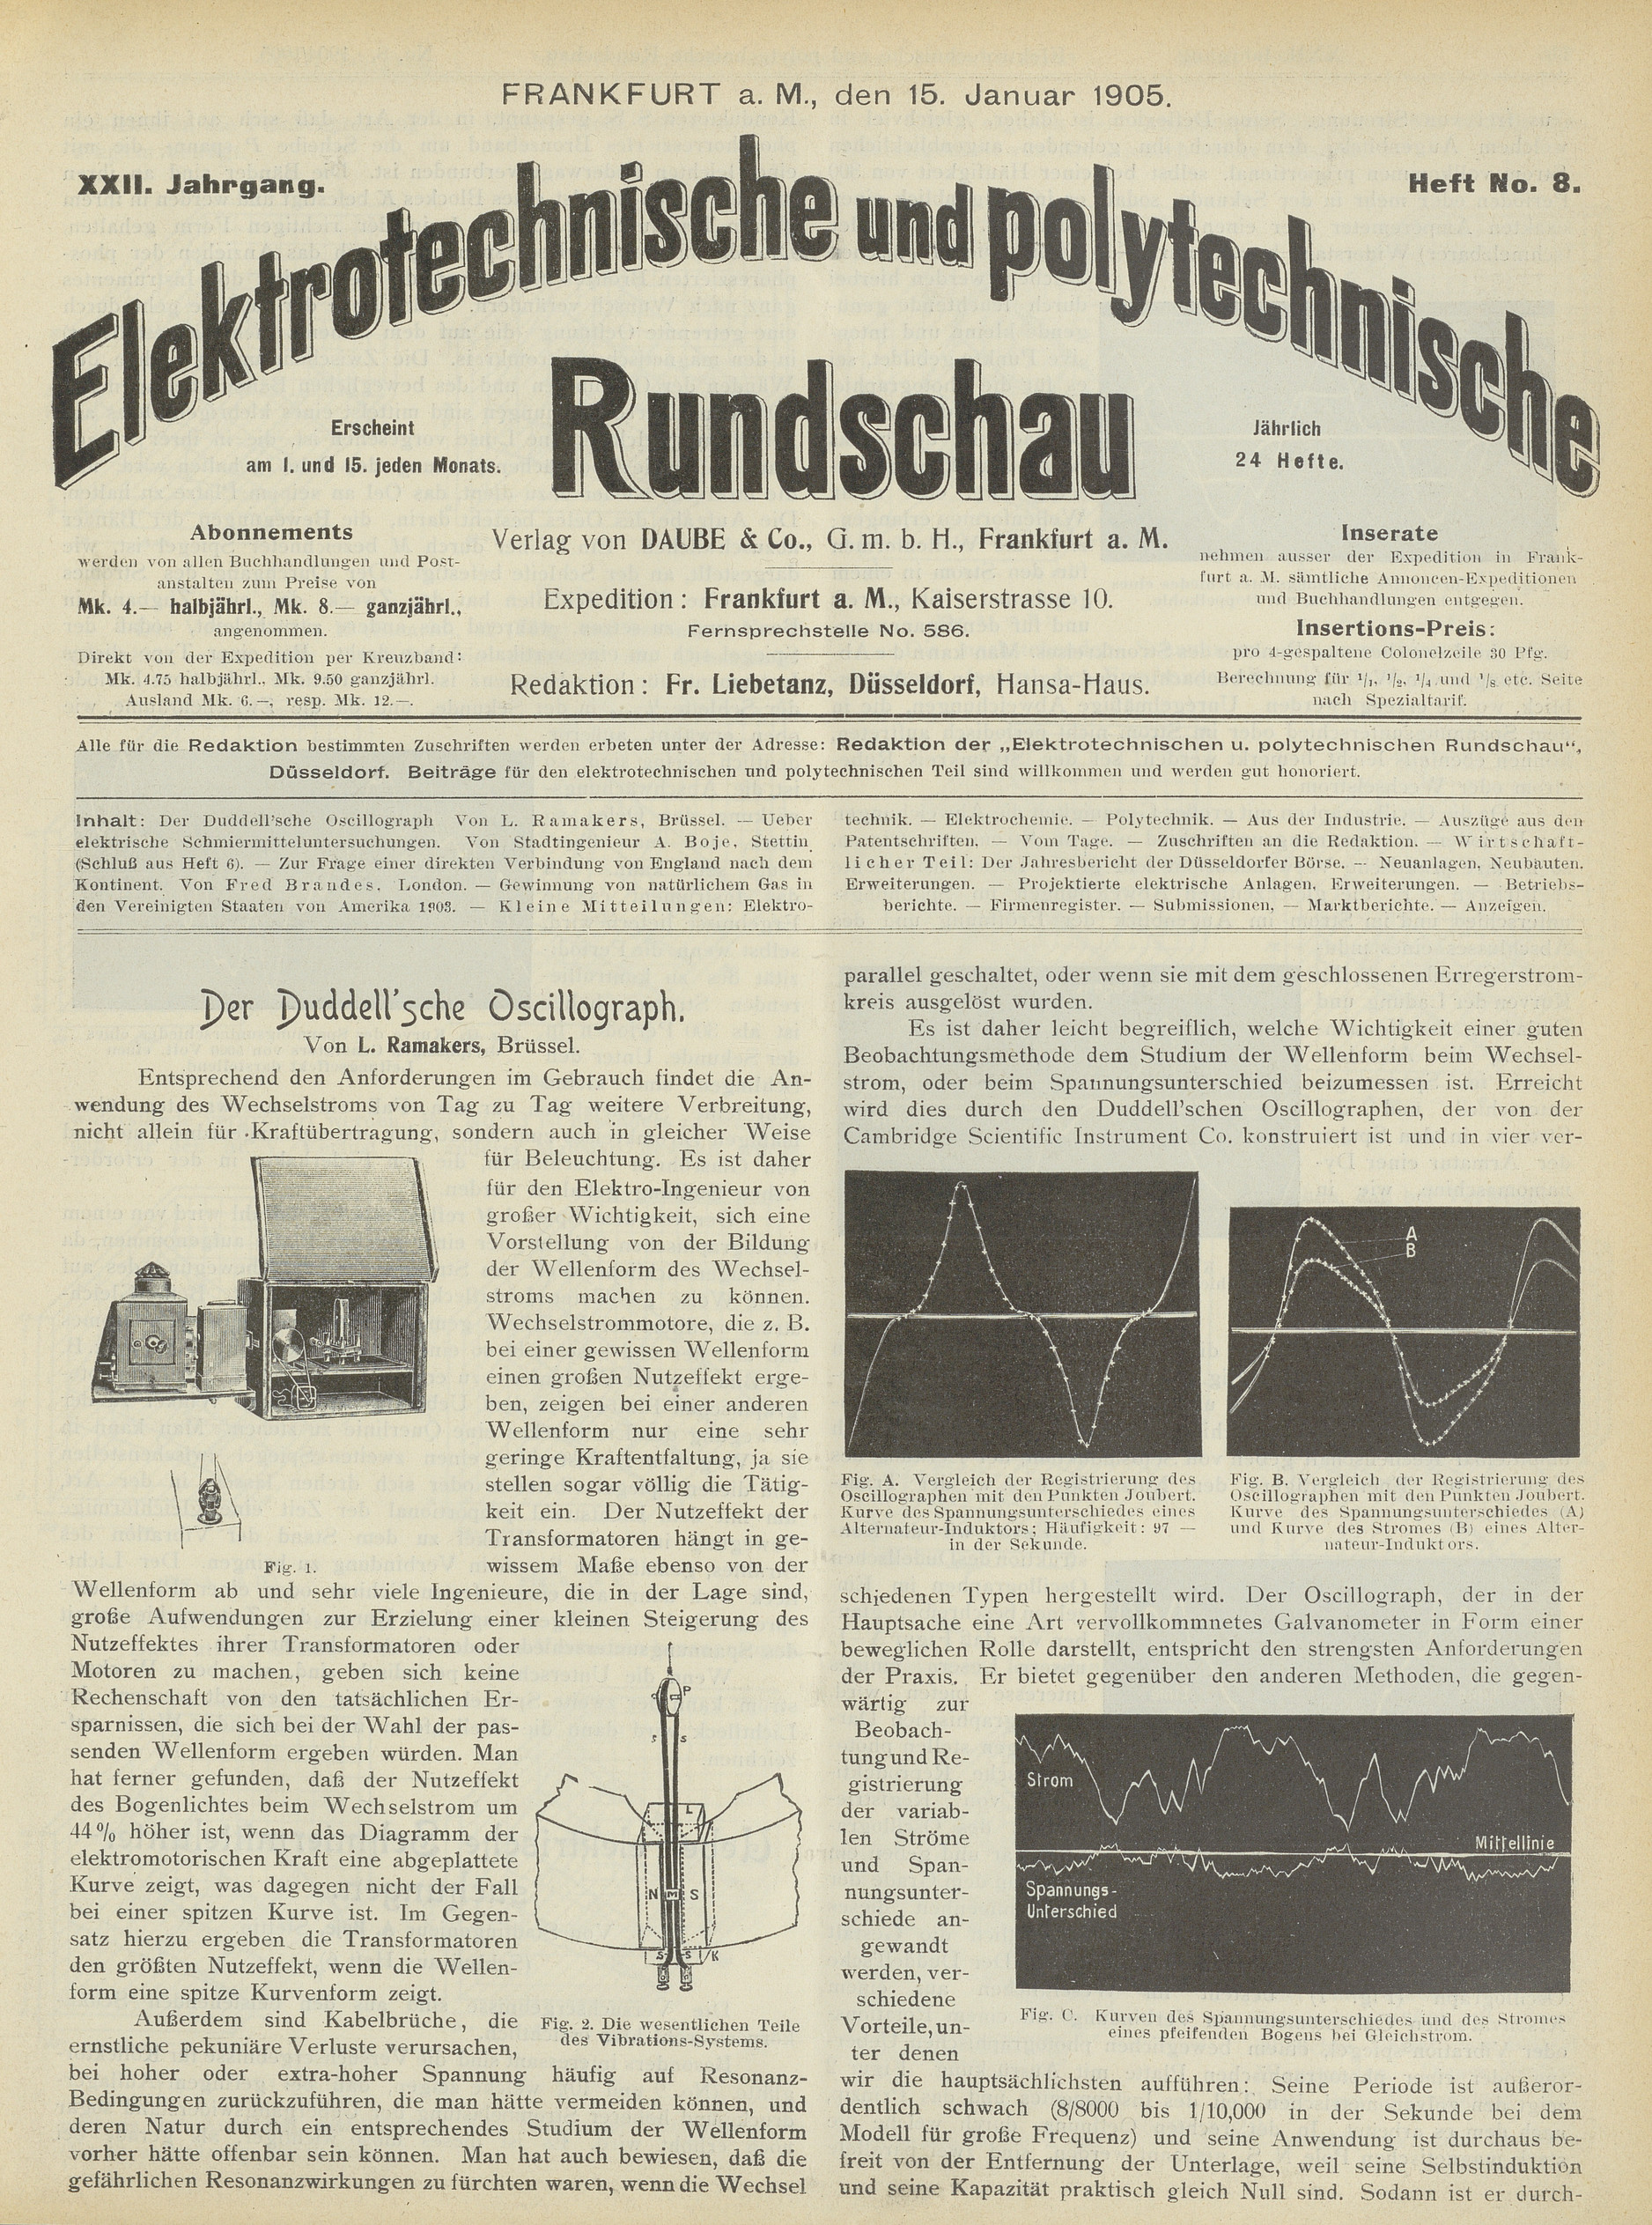 Elektrotechnische und polytechnische Rundschau, XXII. Jahrgang, Heft No. 8